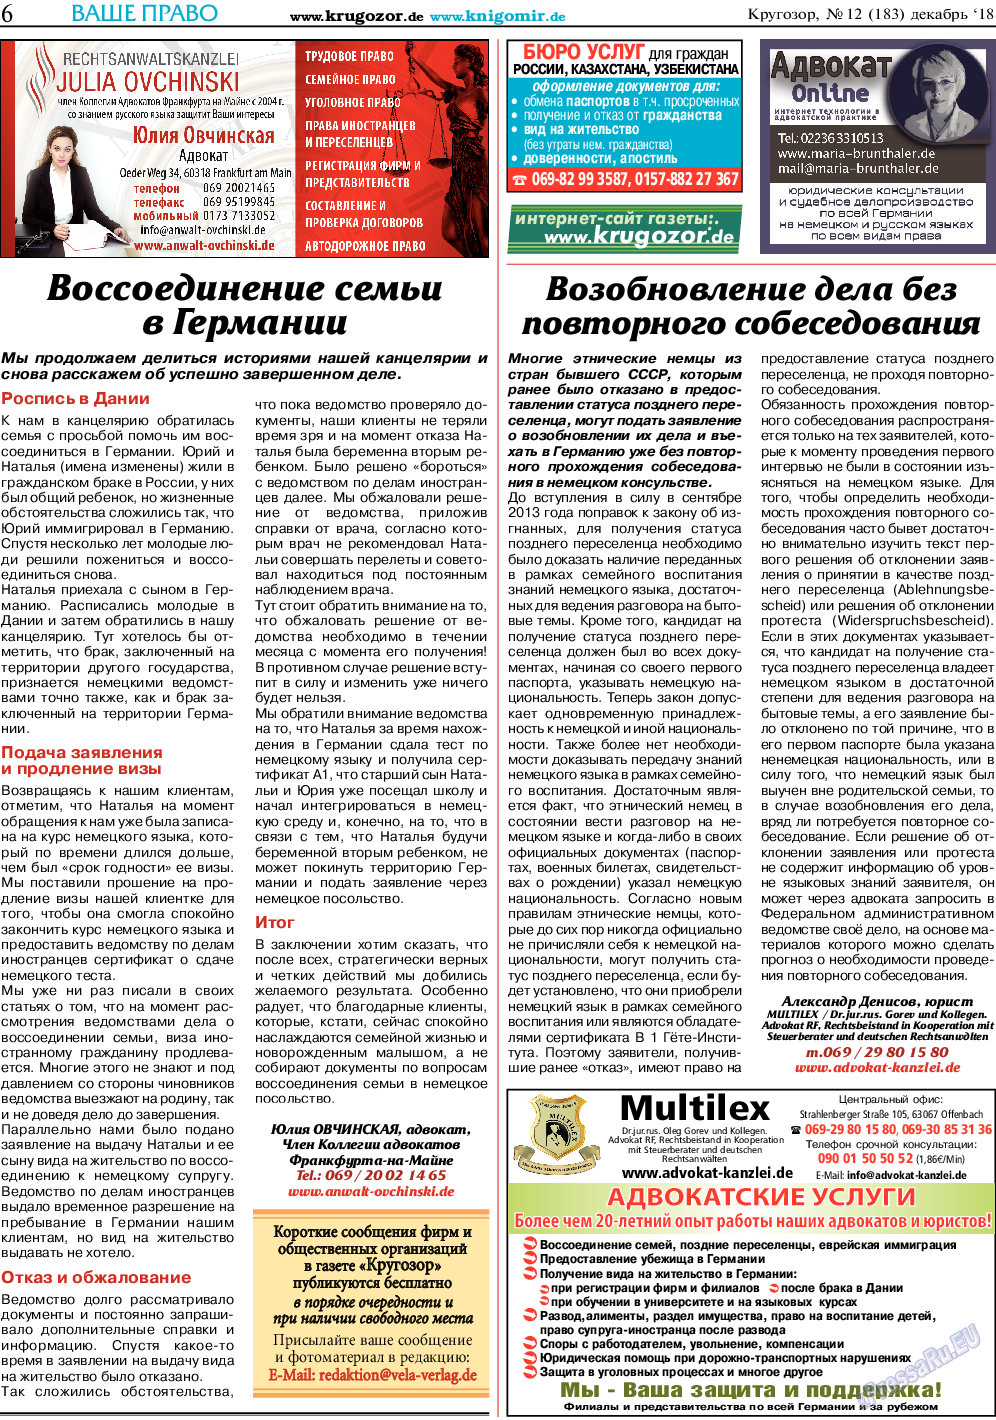 Кругозор, газета. 2018 №12 стр.6